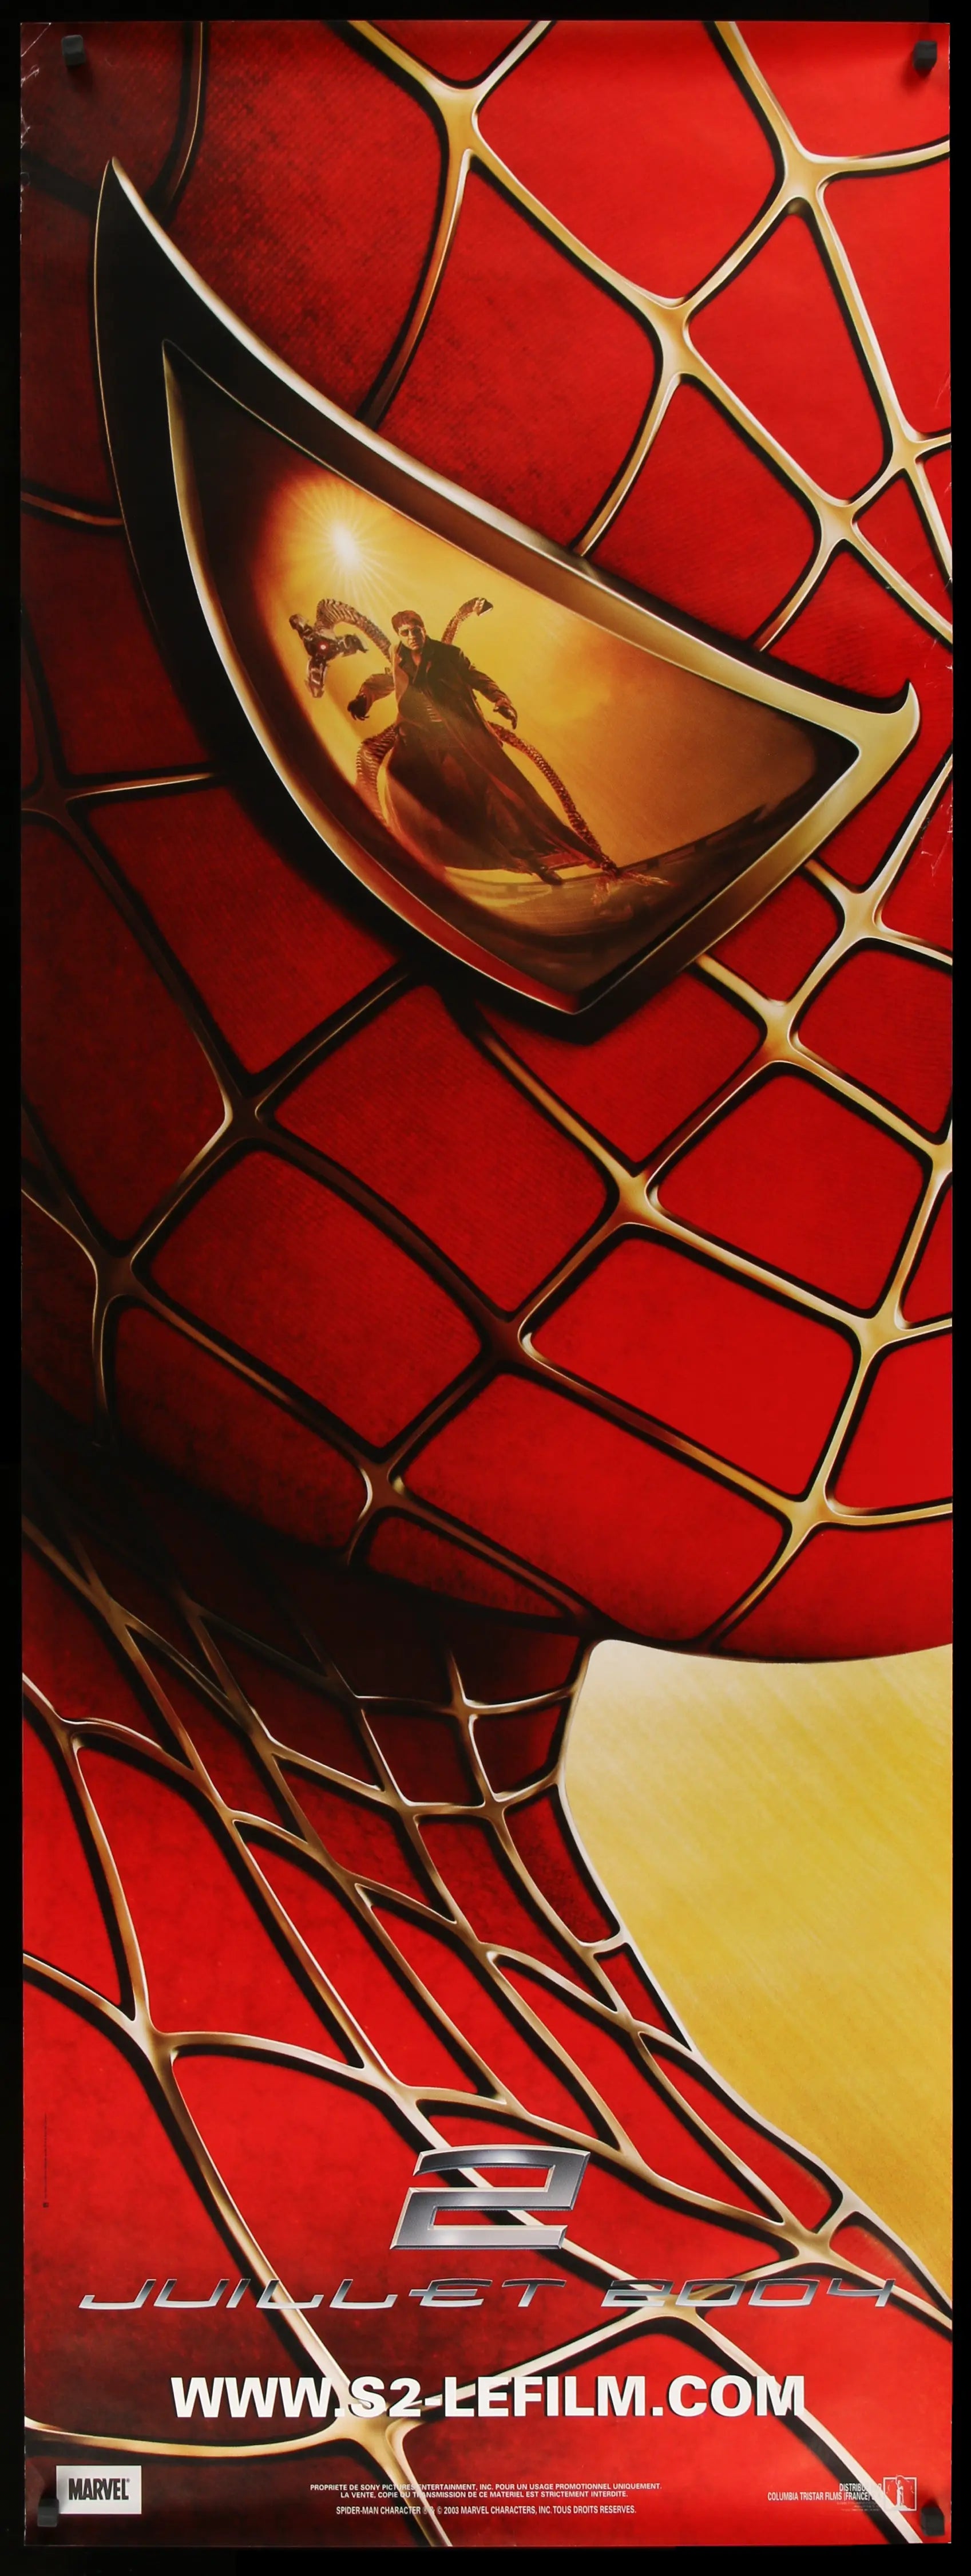 spider man 2002 poster